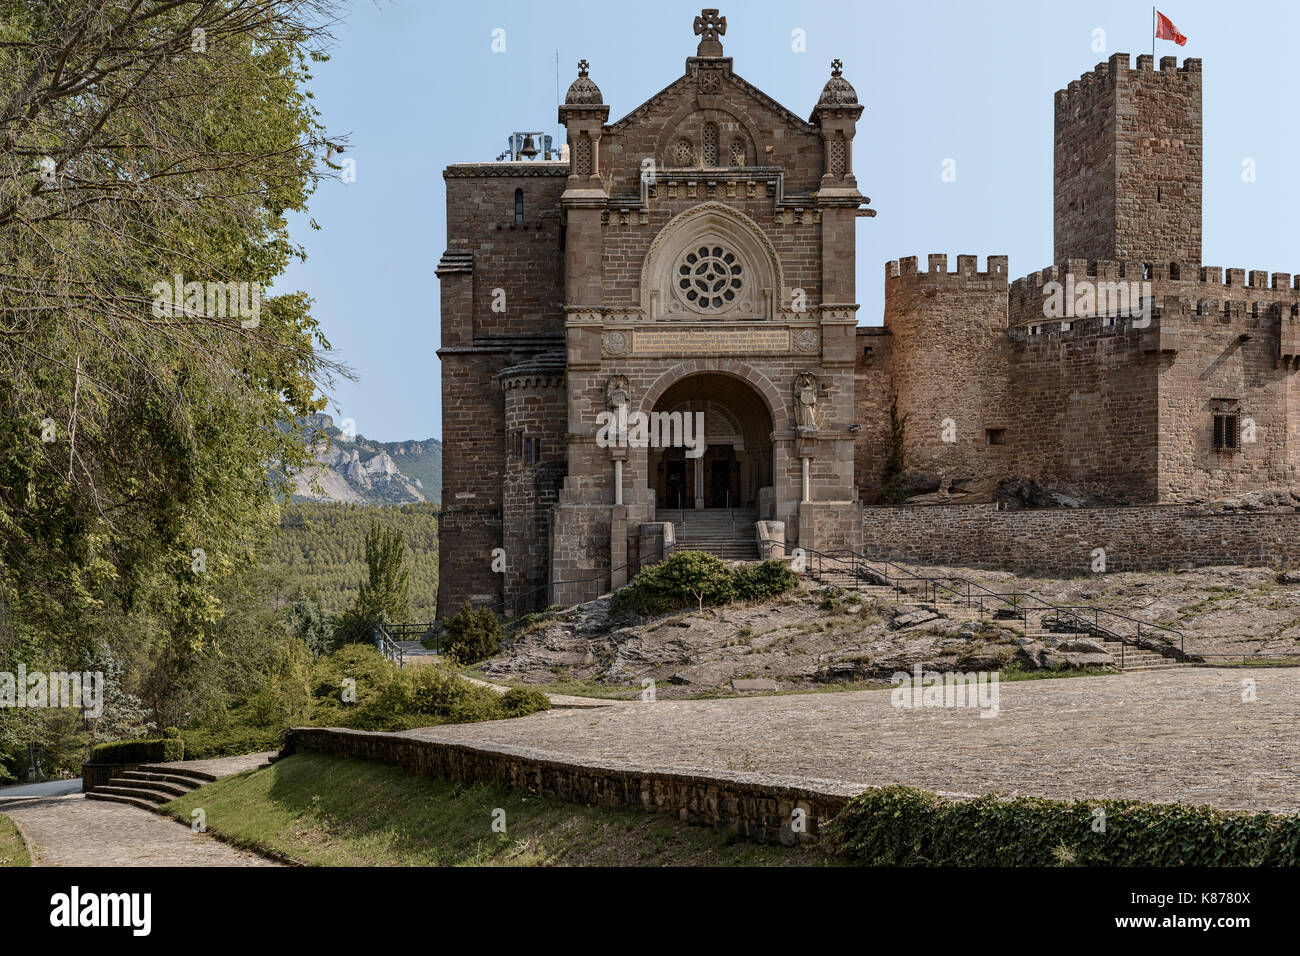 Castello di Javier in provincia di Navarra, regione della Spagna. Famoso per essere il luogo di nascita di San Francisco Javier. Foto Stock